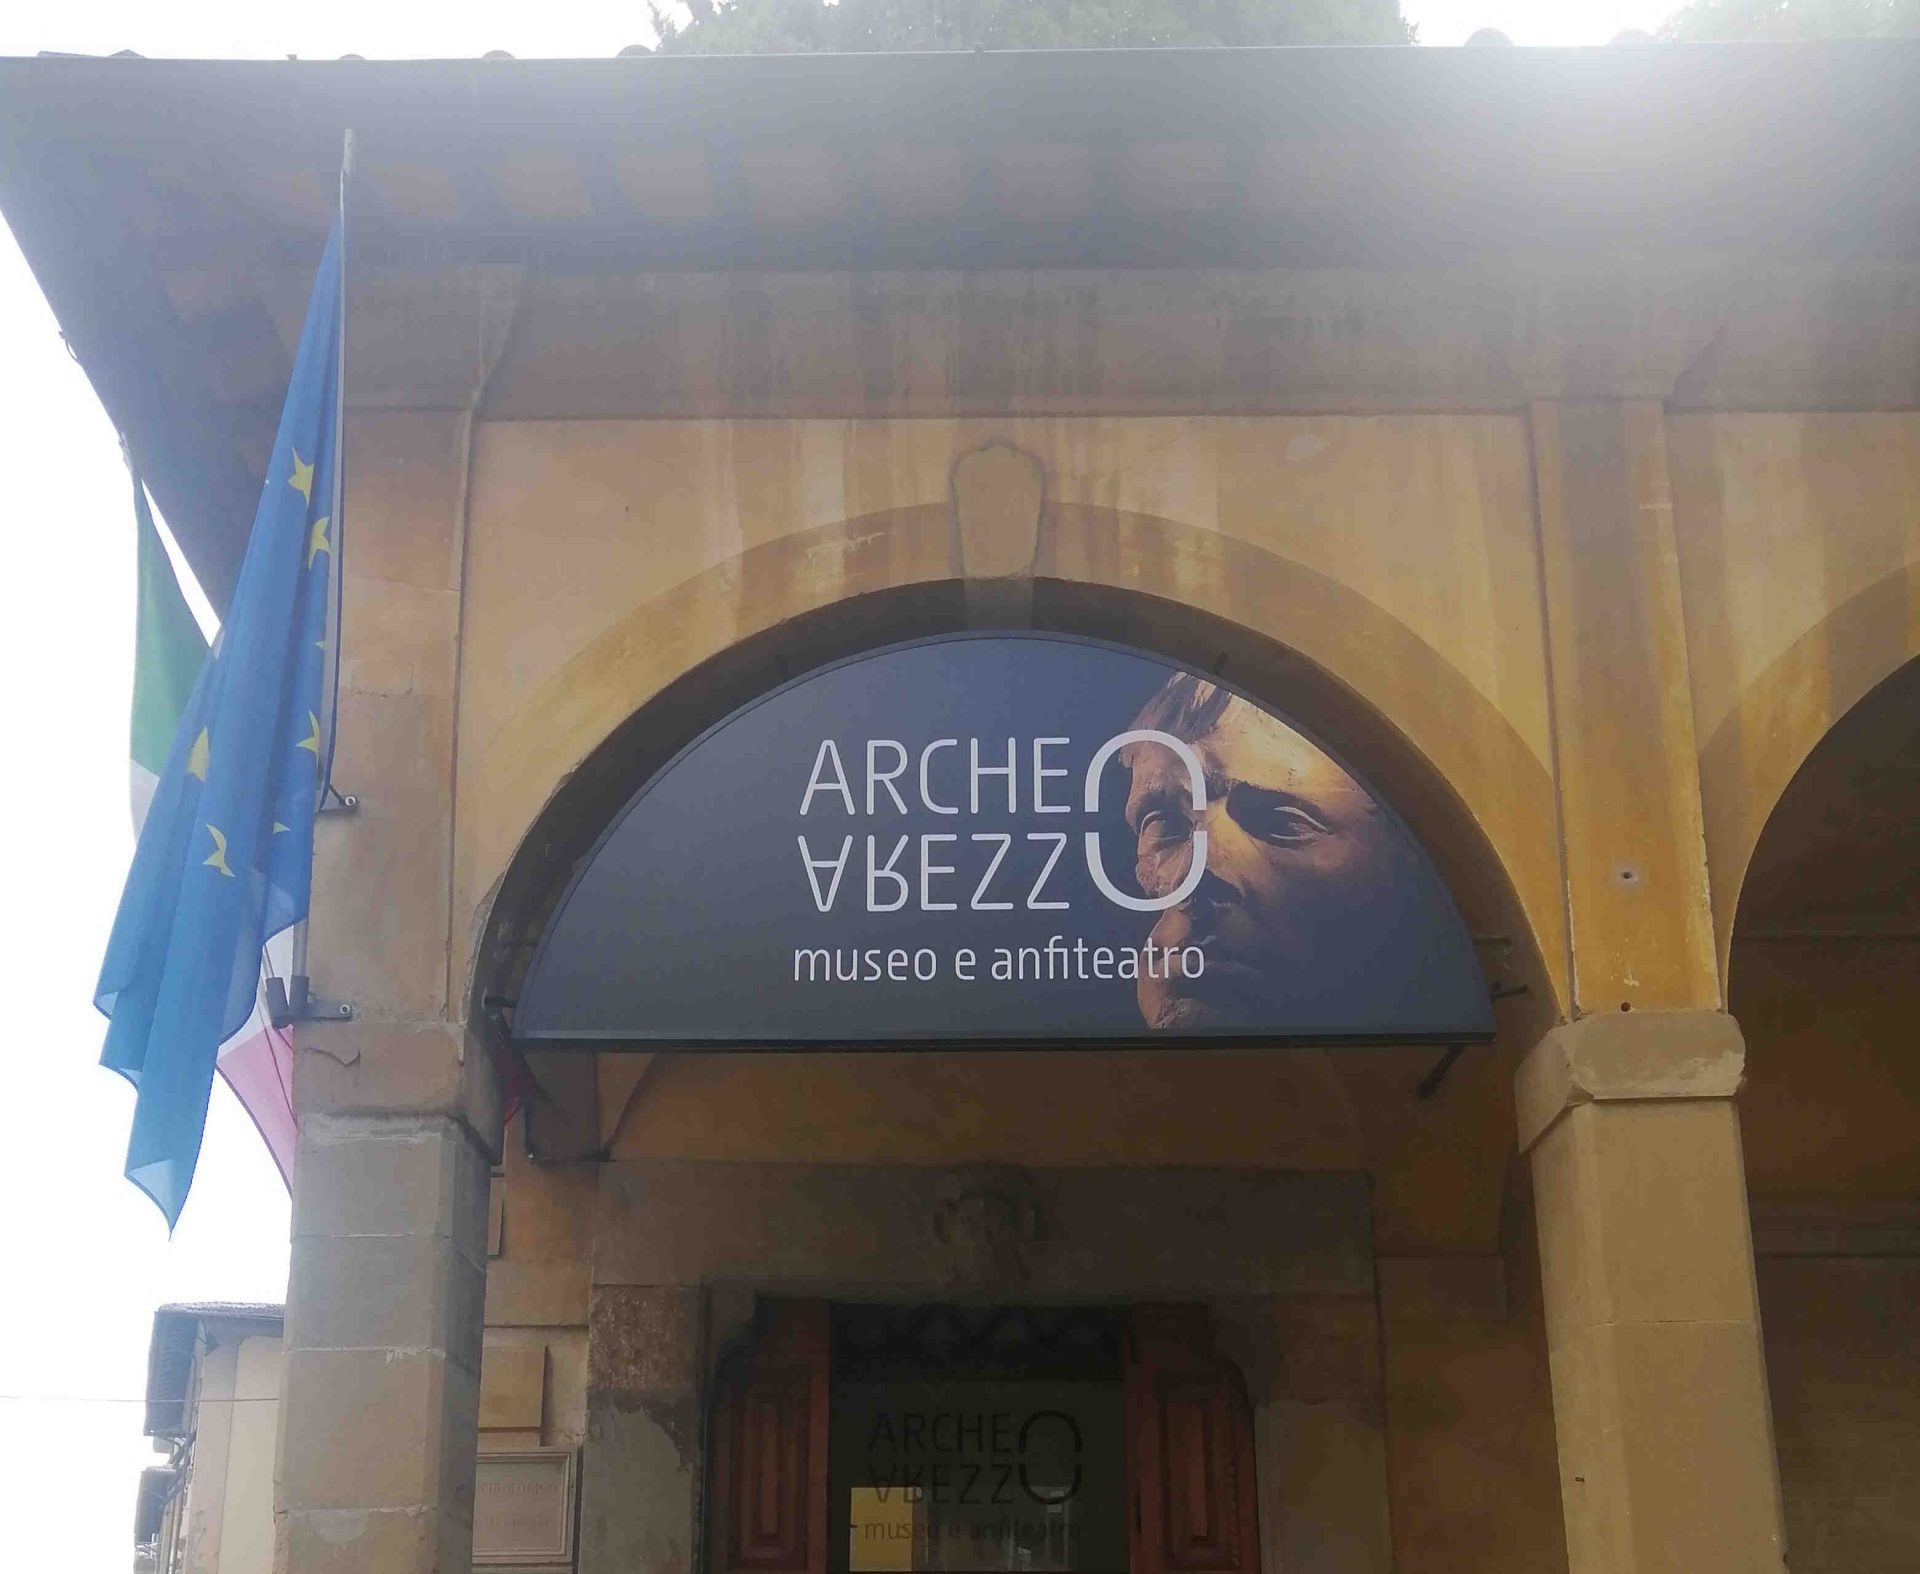 La Direzione regionale musei della Toscana riapre ad Arezzo il Museo Archeologico Nazionale Gaio Cilnio Mecenate e l’Anfiteatro romano